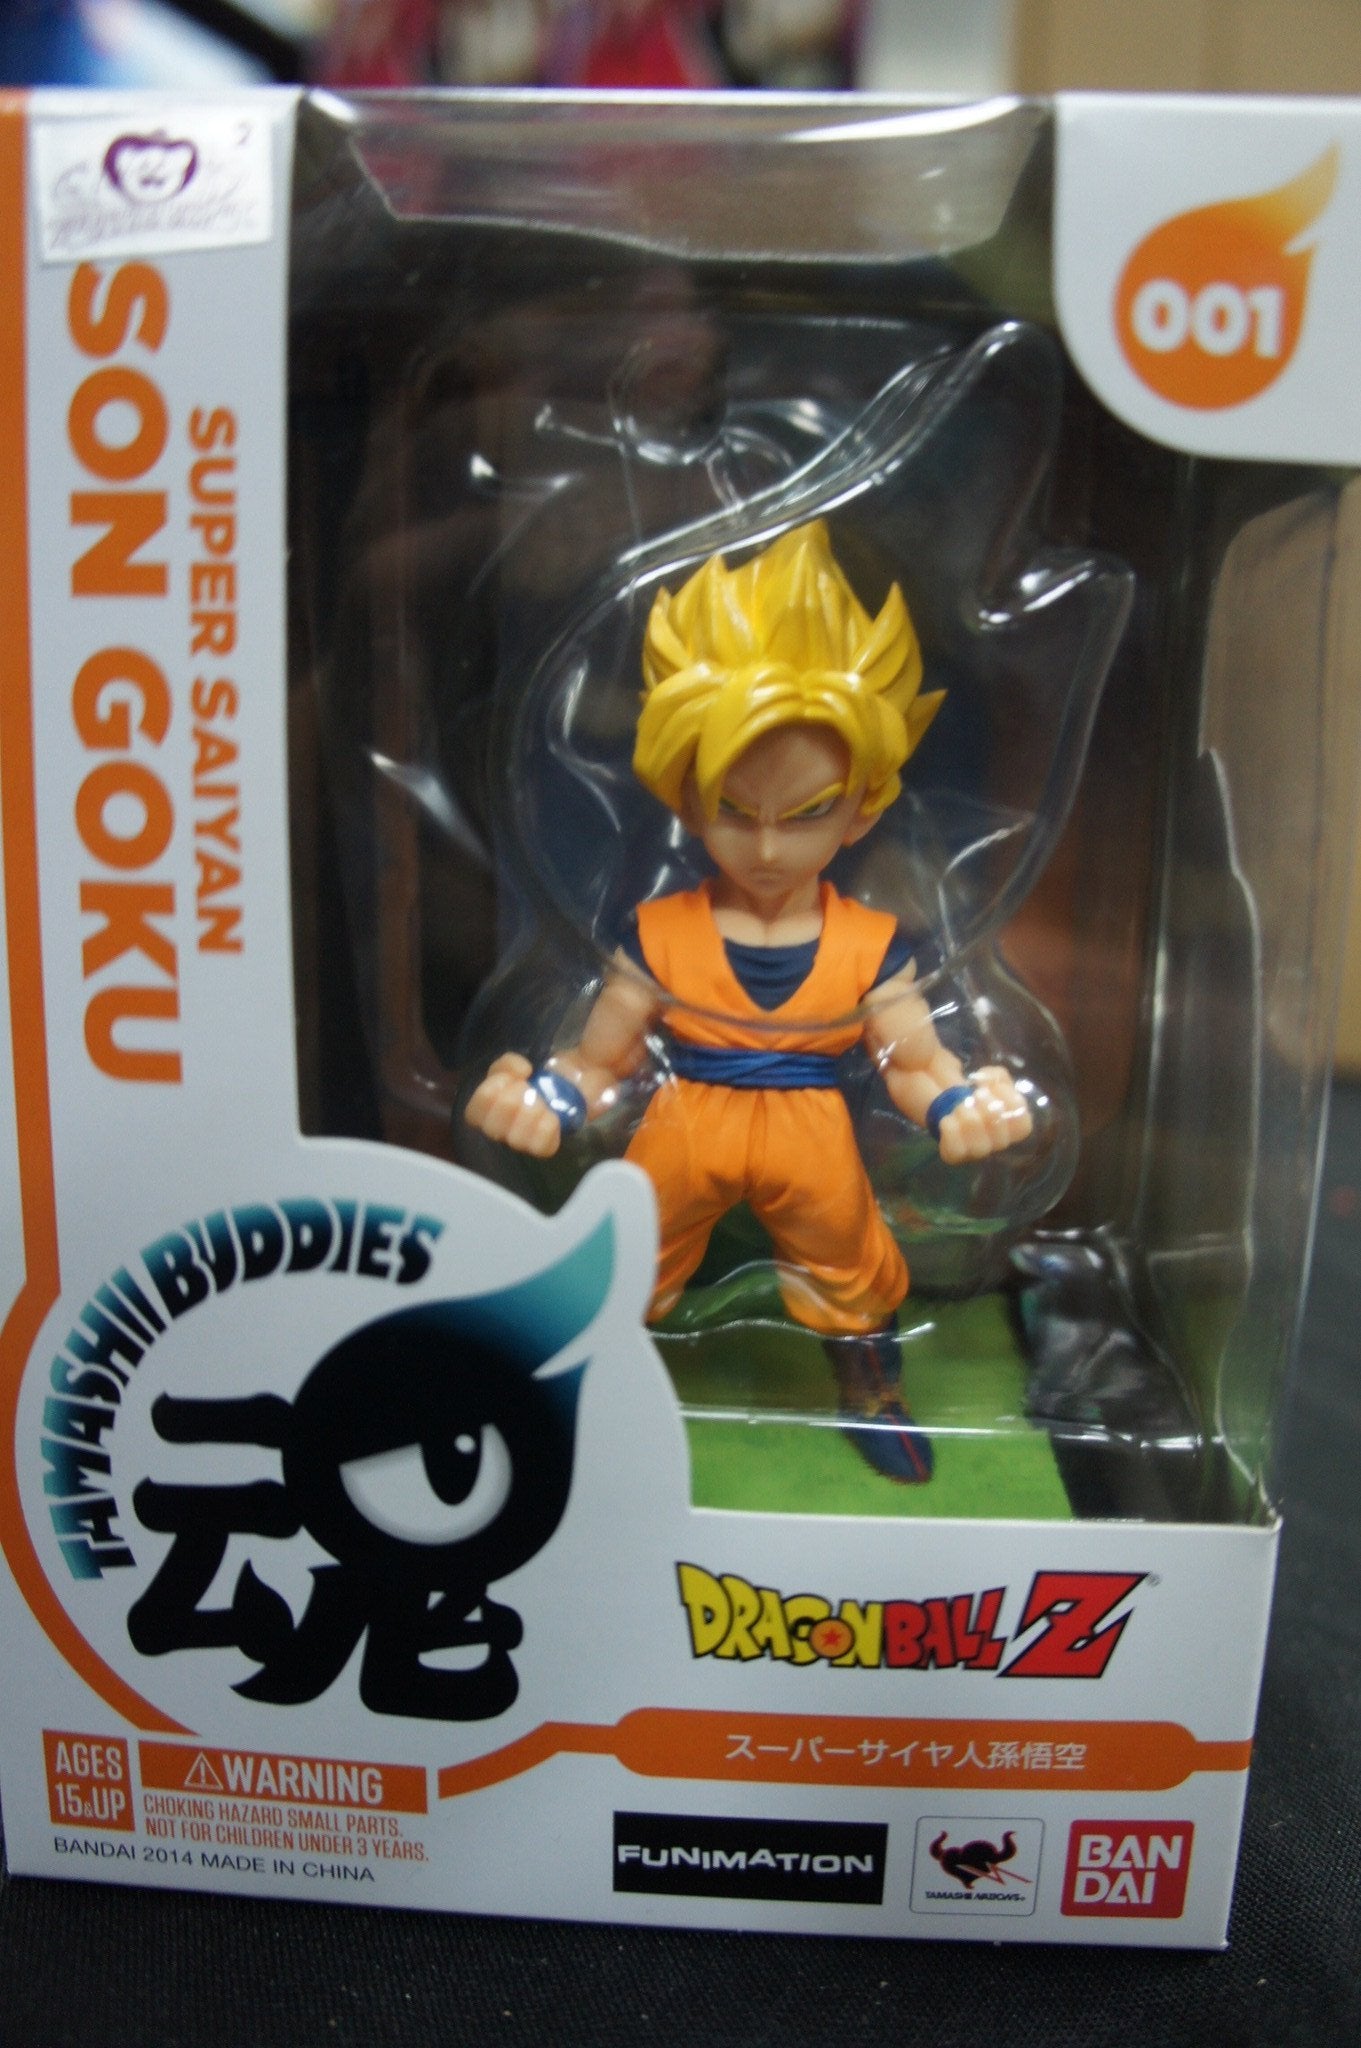 Tamashii Buddies #001 Super Saiyan Son Goku